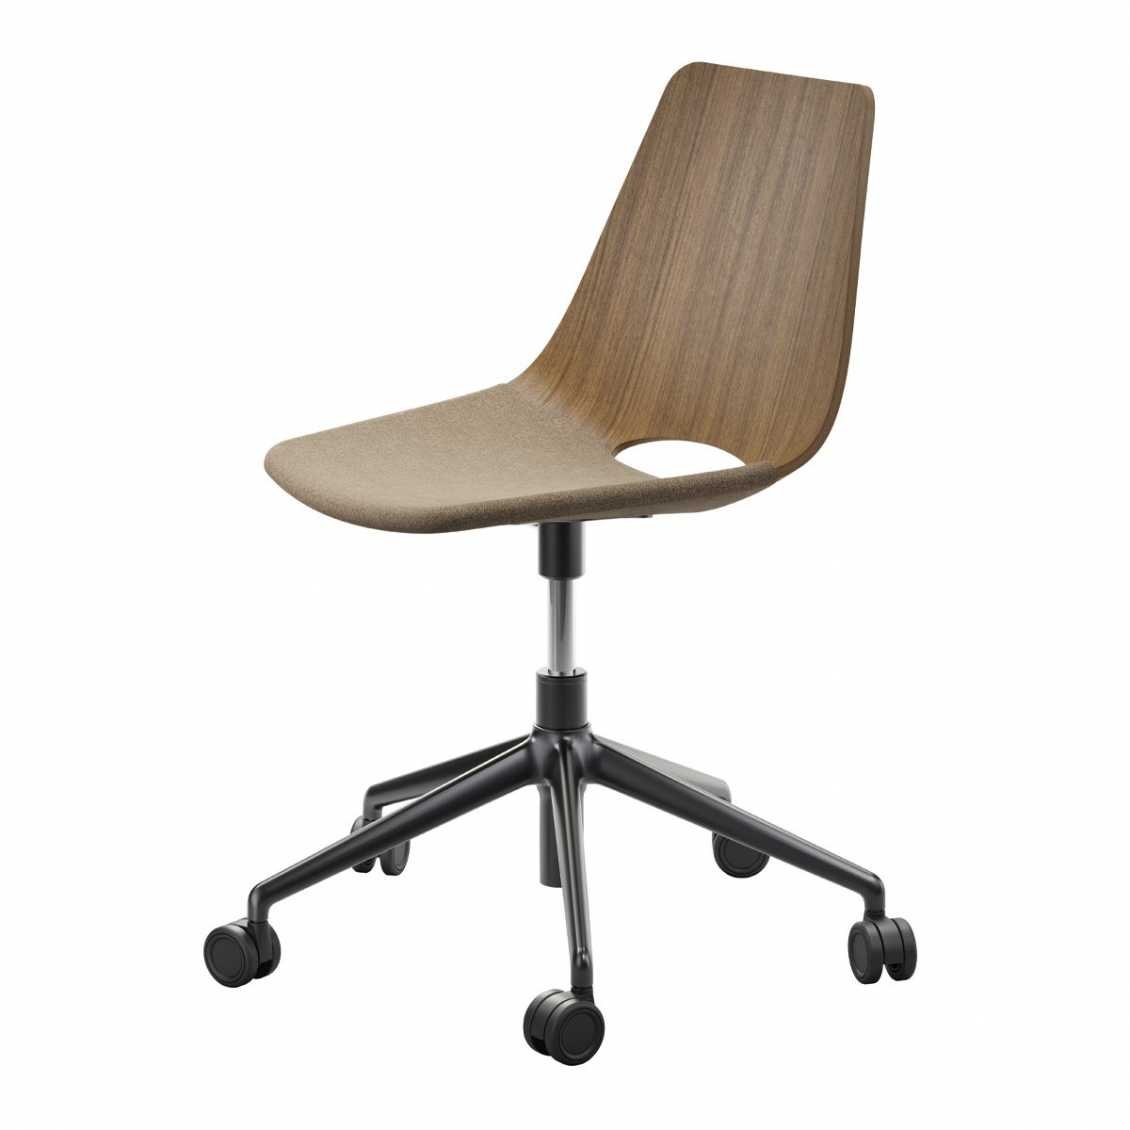 Thonet S661 SPVDR Swivel chair